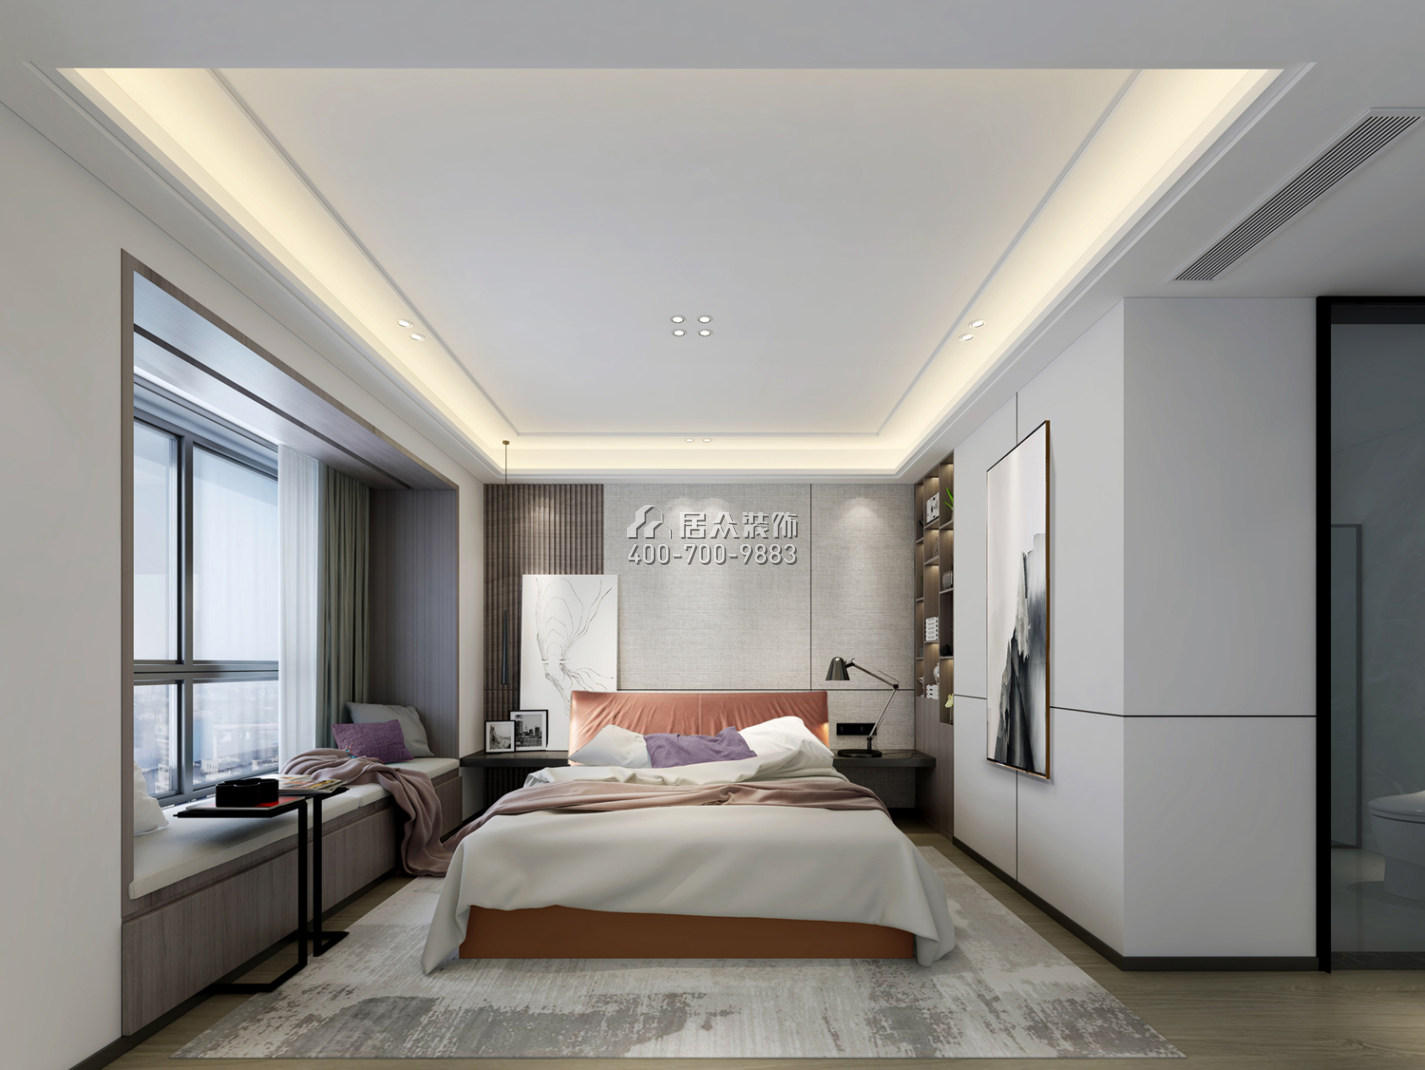 壹方商业中心二期342平方米中式风格平层户型卧室（中国）科技有限公司官网效果图